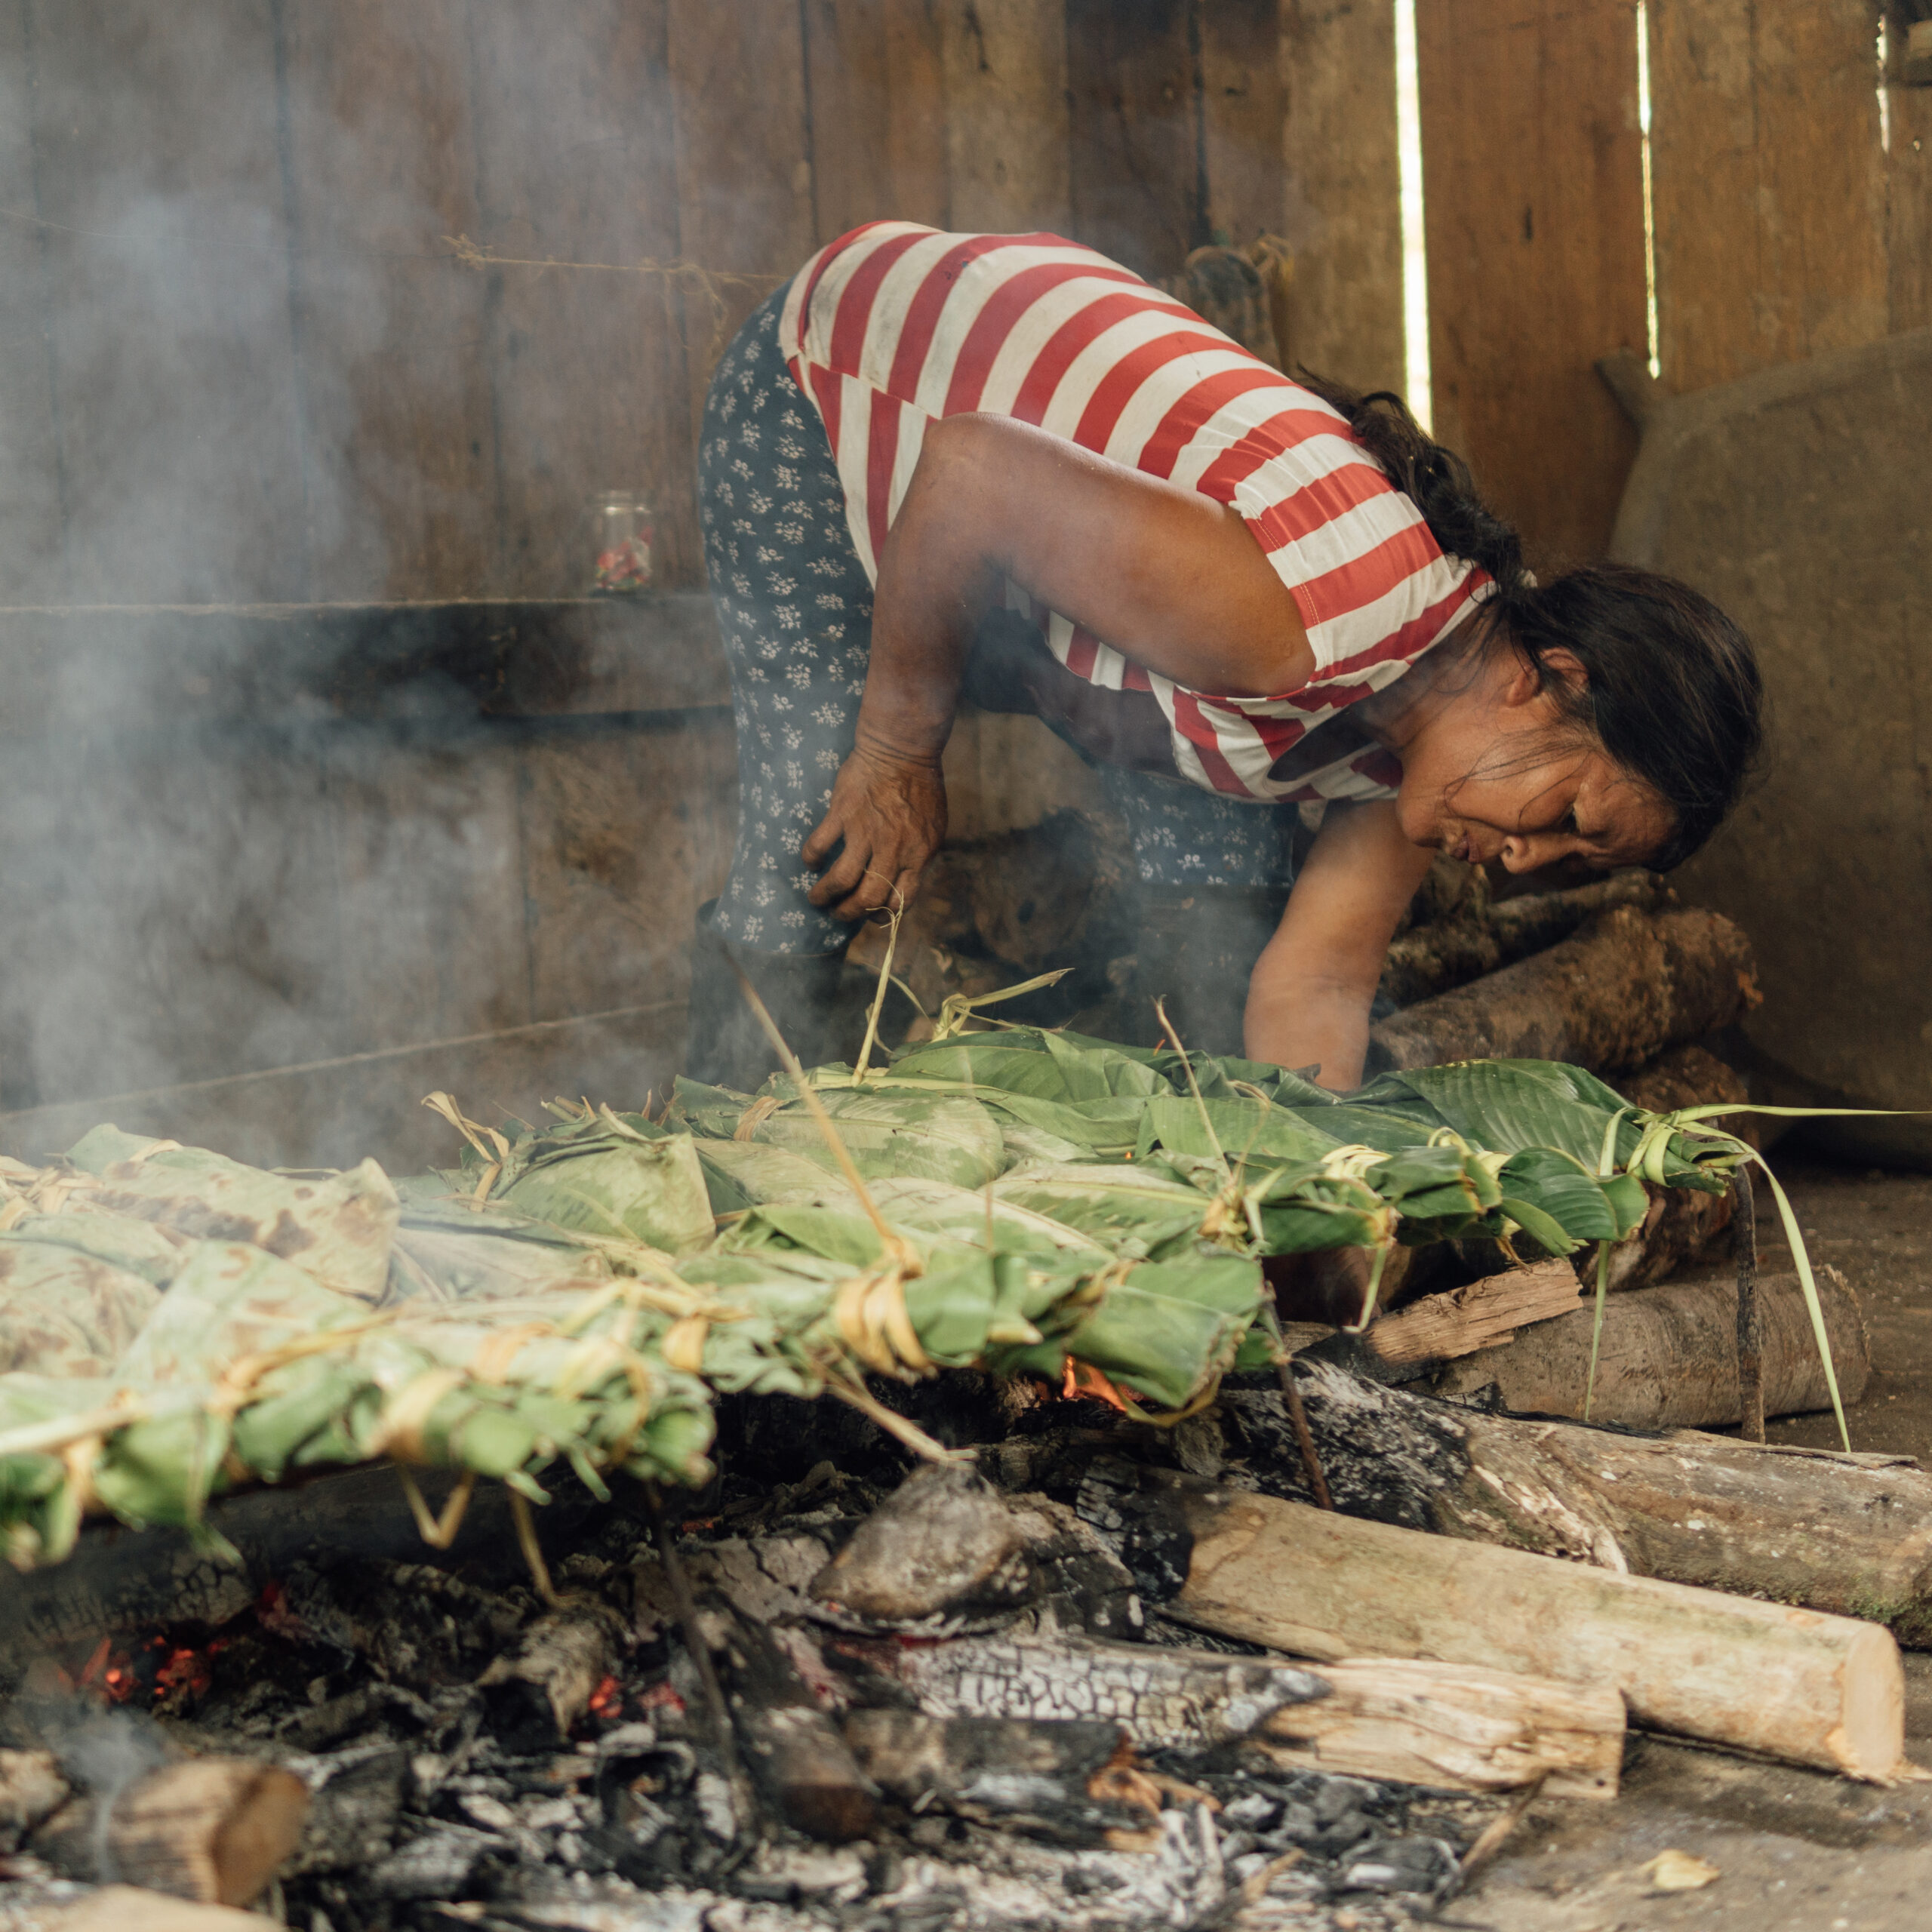 Mujer indígena kichwa preparando comida tradicional en las brasas de un fuego de manera tradicional